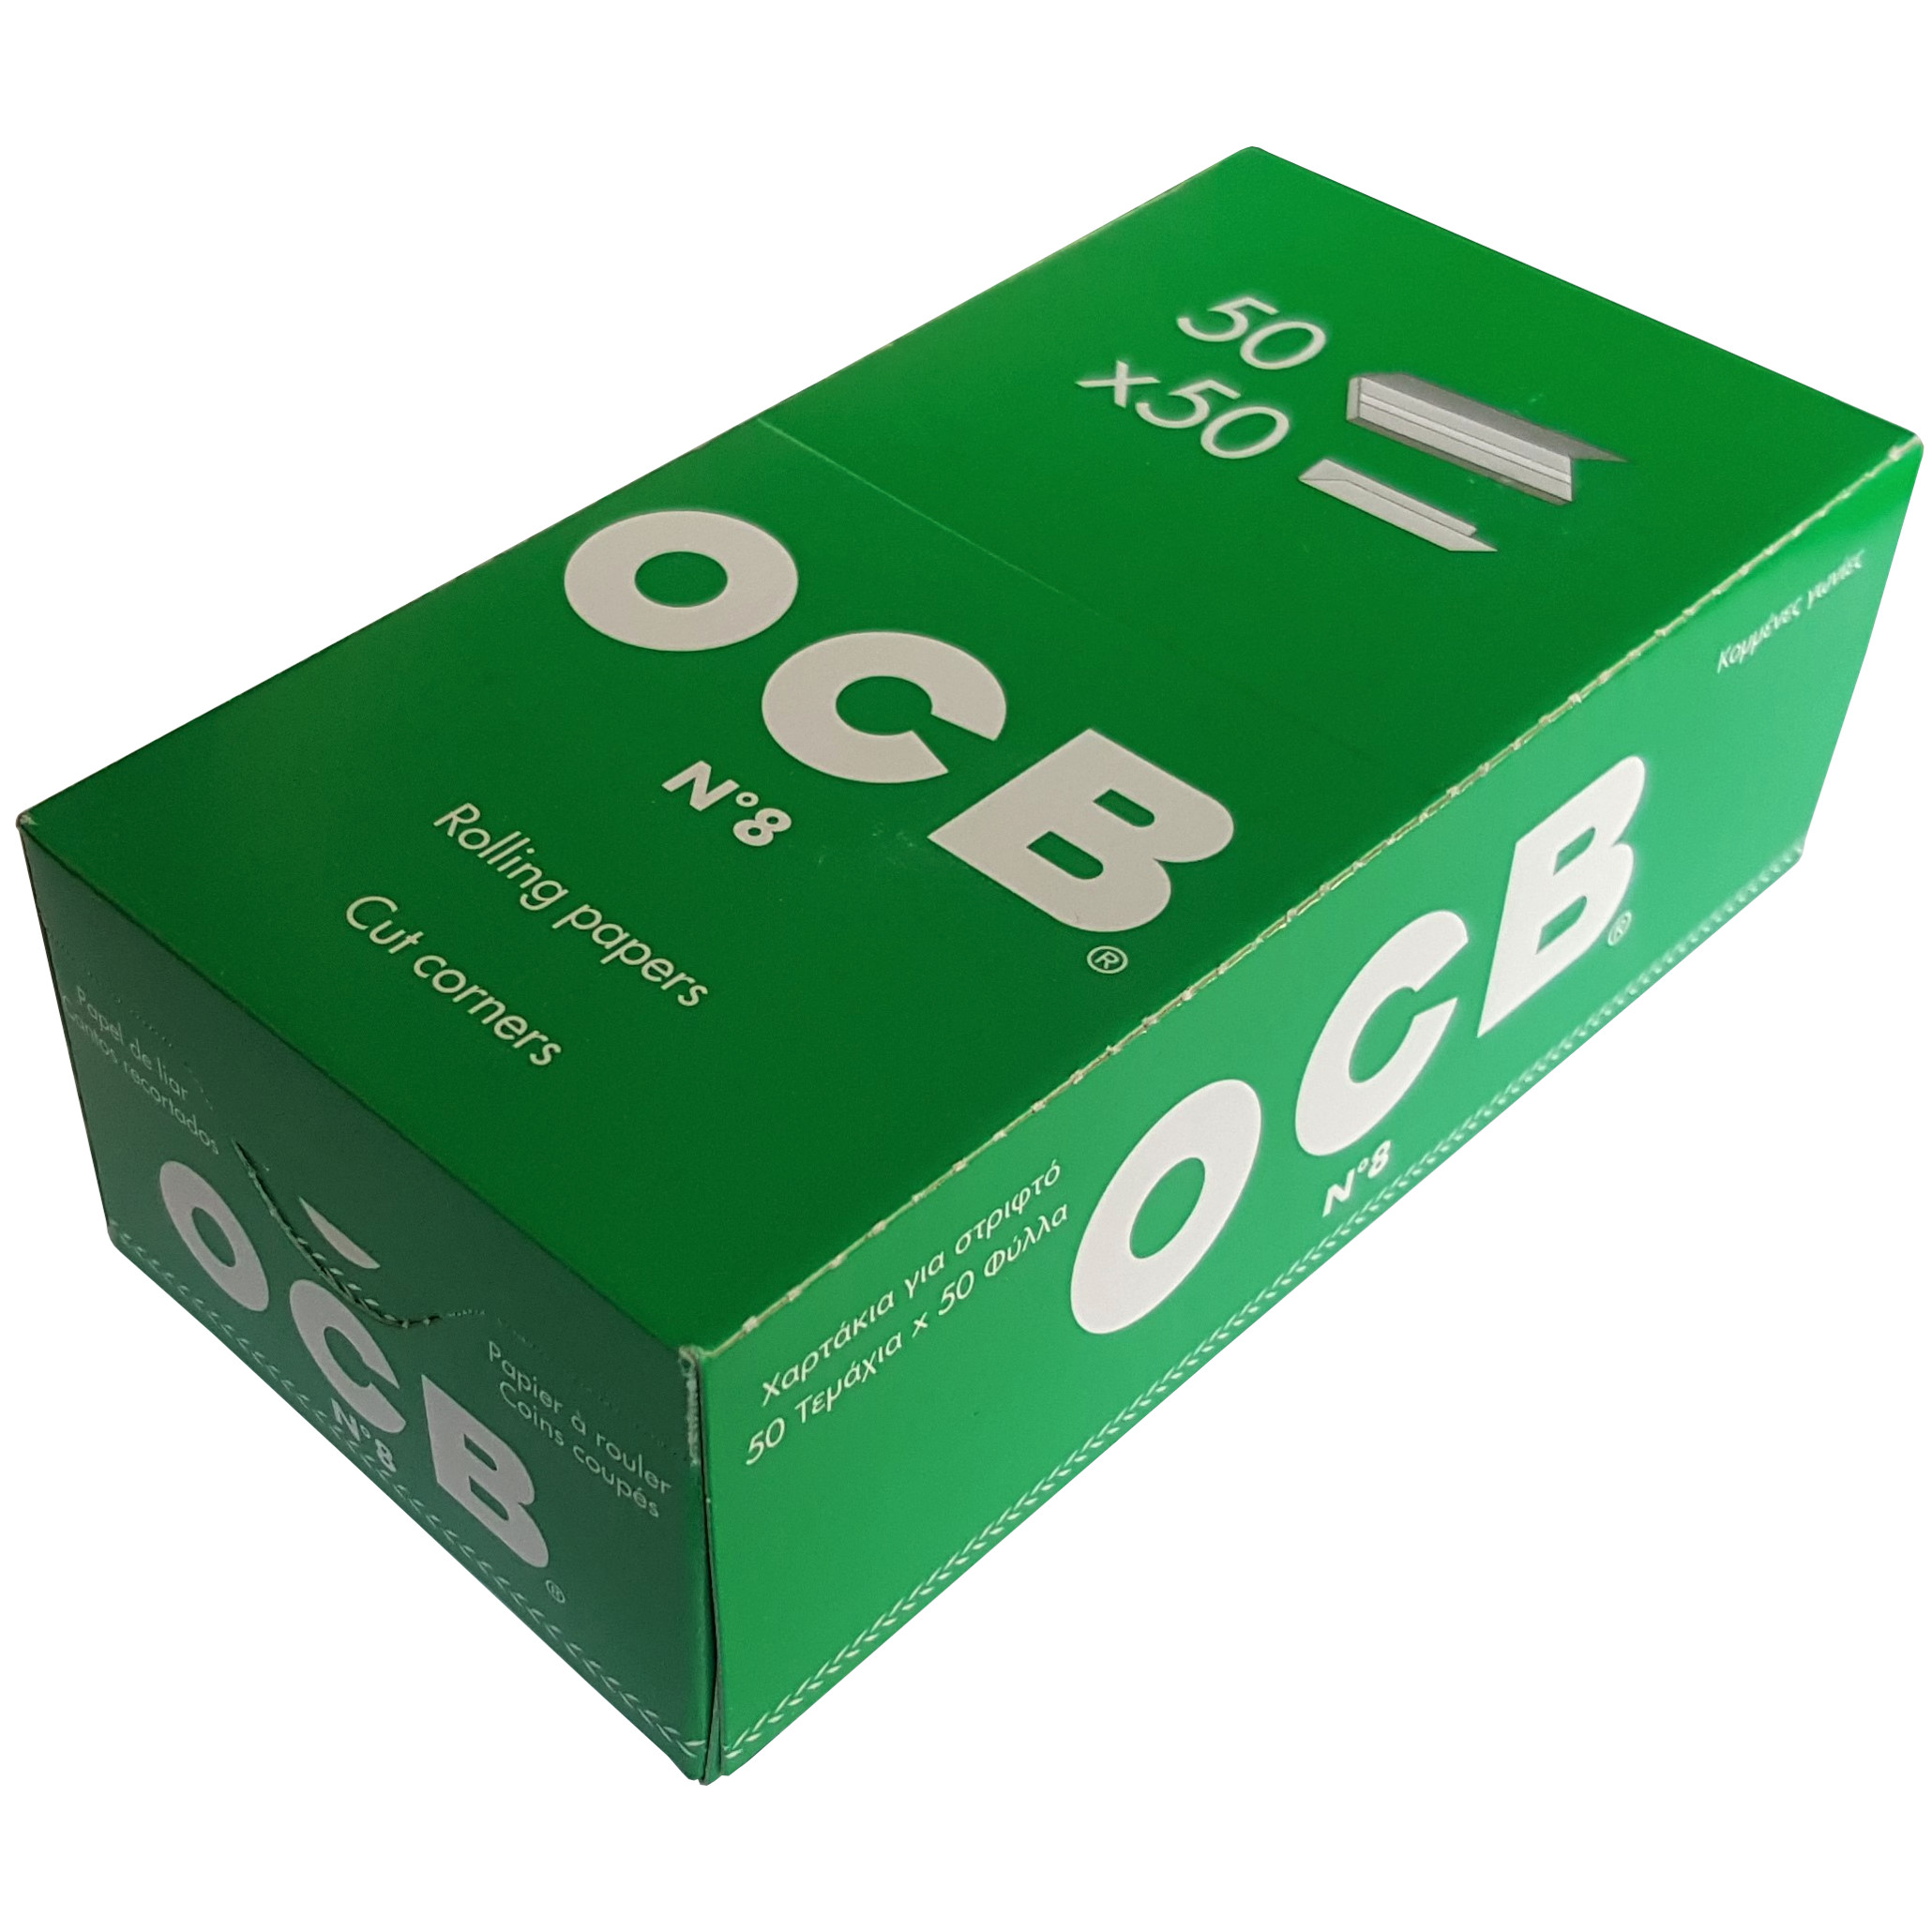 Бумага 10 10 купить. Бумага OCB № 8 Green. Фильтры бумажные OCB 50шт. Бумага OCB Blue 50 шт. Бумага OCB Black 1/4 50 шт.